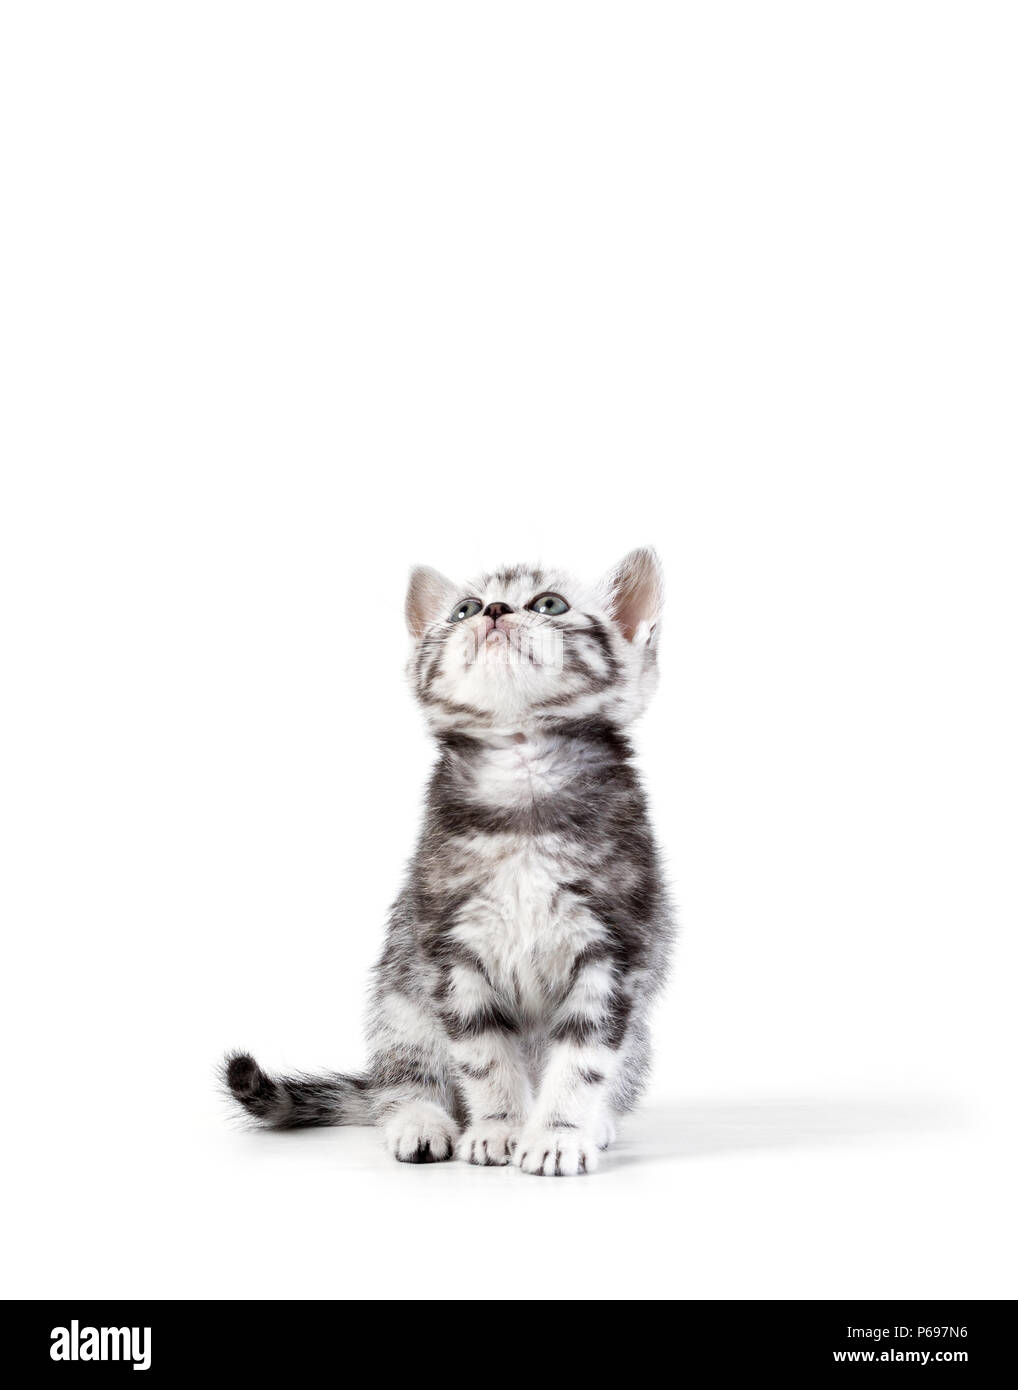 British capelli corti silver tabby kitten isolati su sfondo bianco Foto Stock